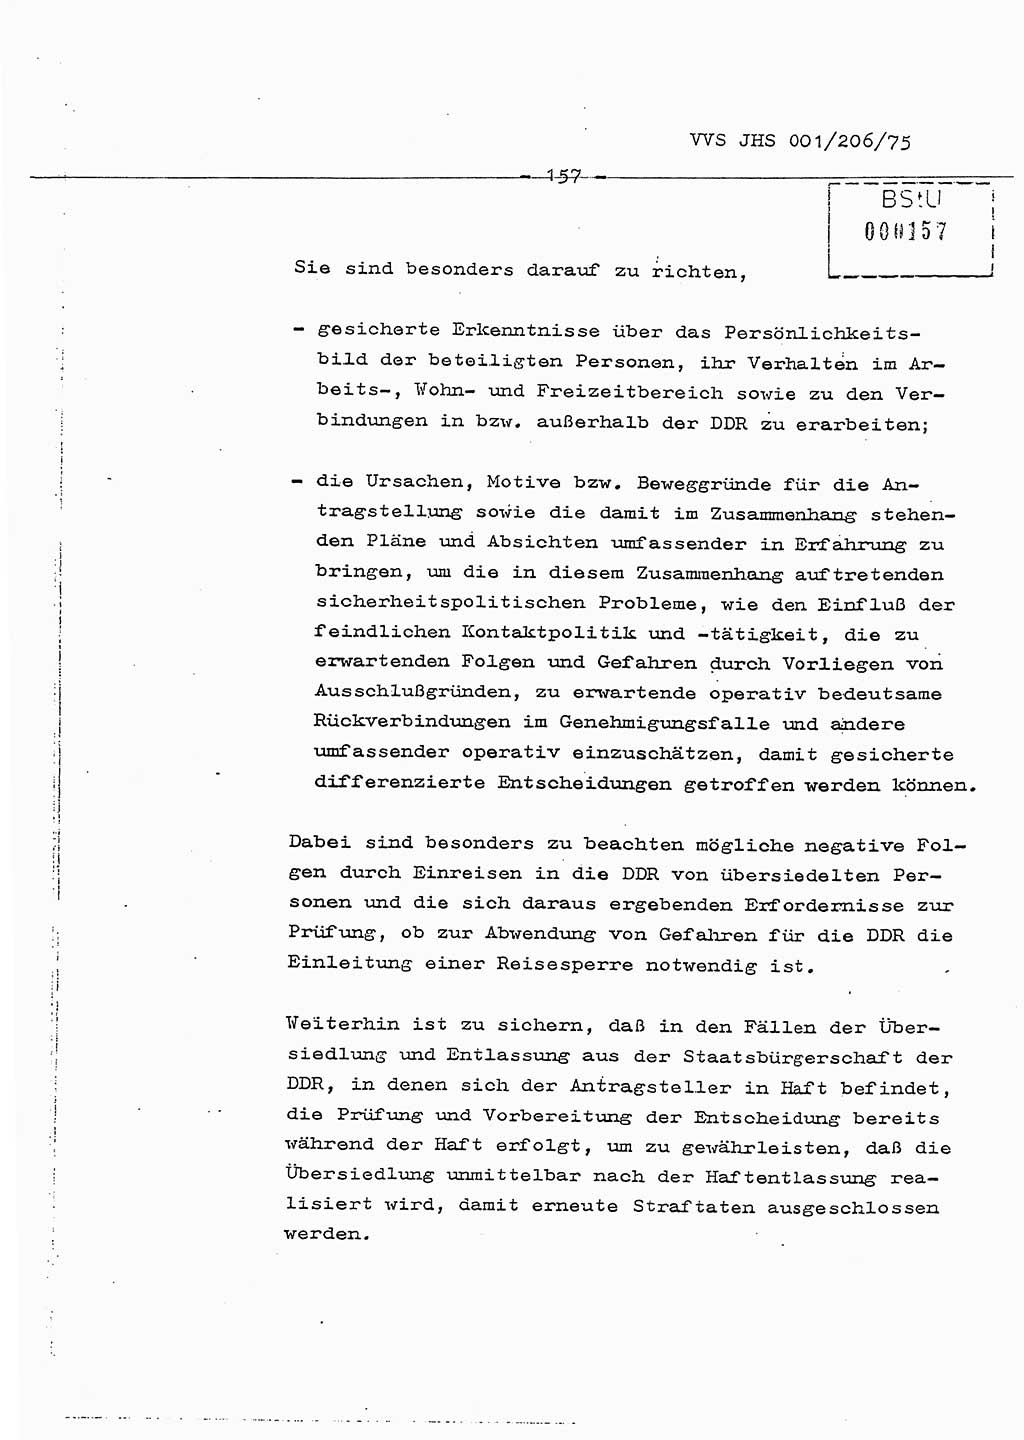 Dissertation Generalmajor Manfred Hummitzsch (Leiter der BV Leipzig), Generalmajor Heinz Fiedler (HA Ⅵ), Oberst Rolf Fister (HA Ⅸ), Ministerium für Staatssicherheit (MfS) [Deutsche Demokratische Republik (DDR)], Juristische Hochschule (JHS), Vertrauliche Verschlußsache (VVS) 001-206/75, Potsdam 1975, Seite 157 (Diss. MfS DDR JHS VVS 001-206/75 1975, S. 157)